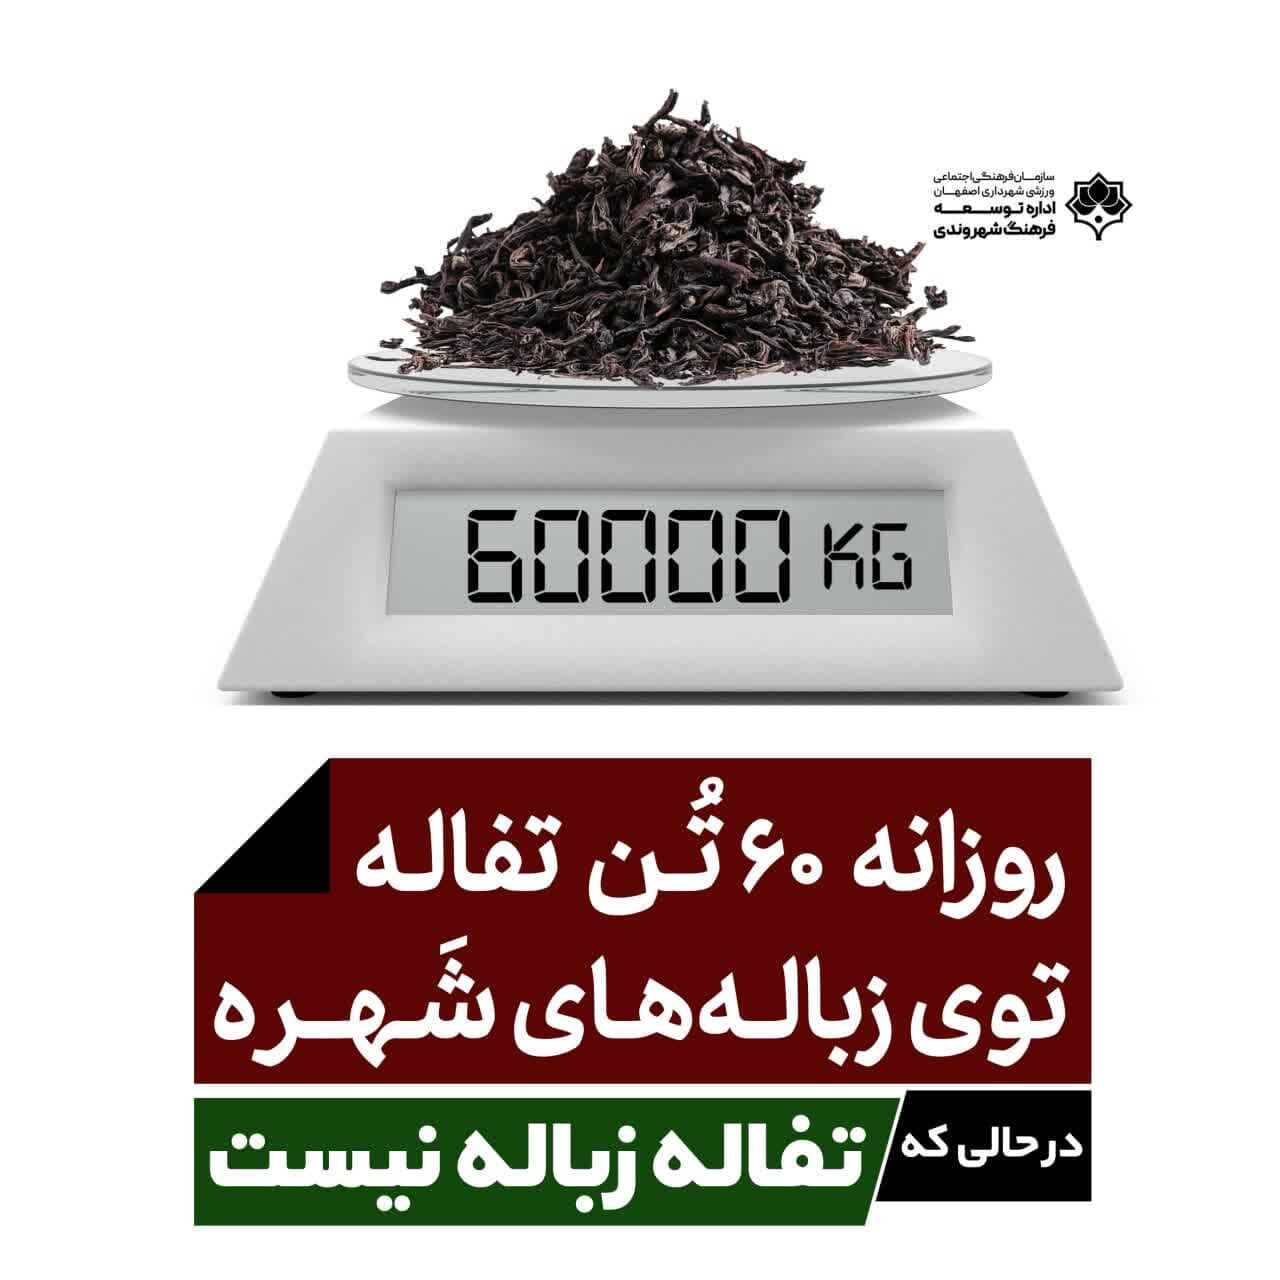 کمپین «تفاله زباله نیست» روی بیش از ۲۰۰ تابلو شهری اصفهان اکران شد